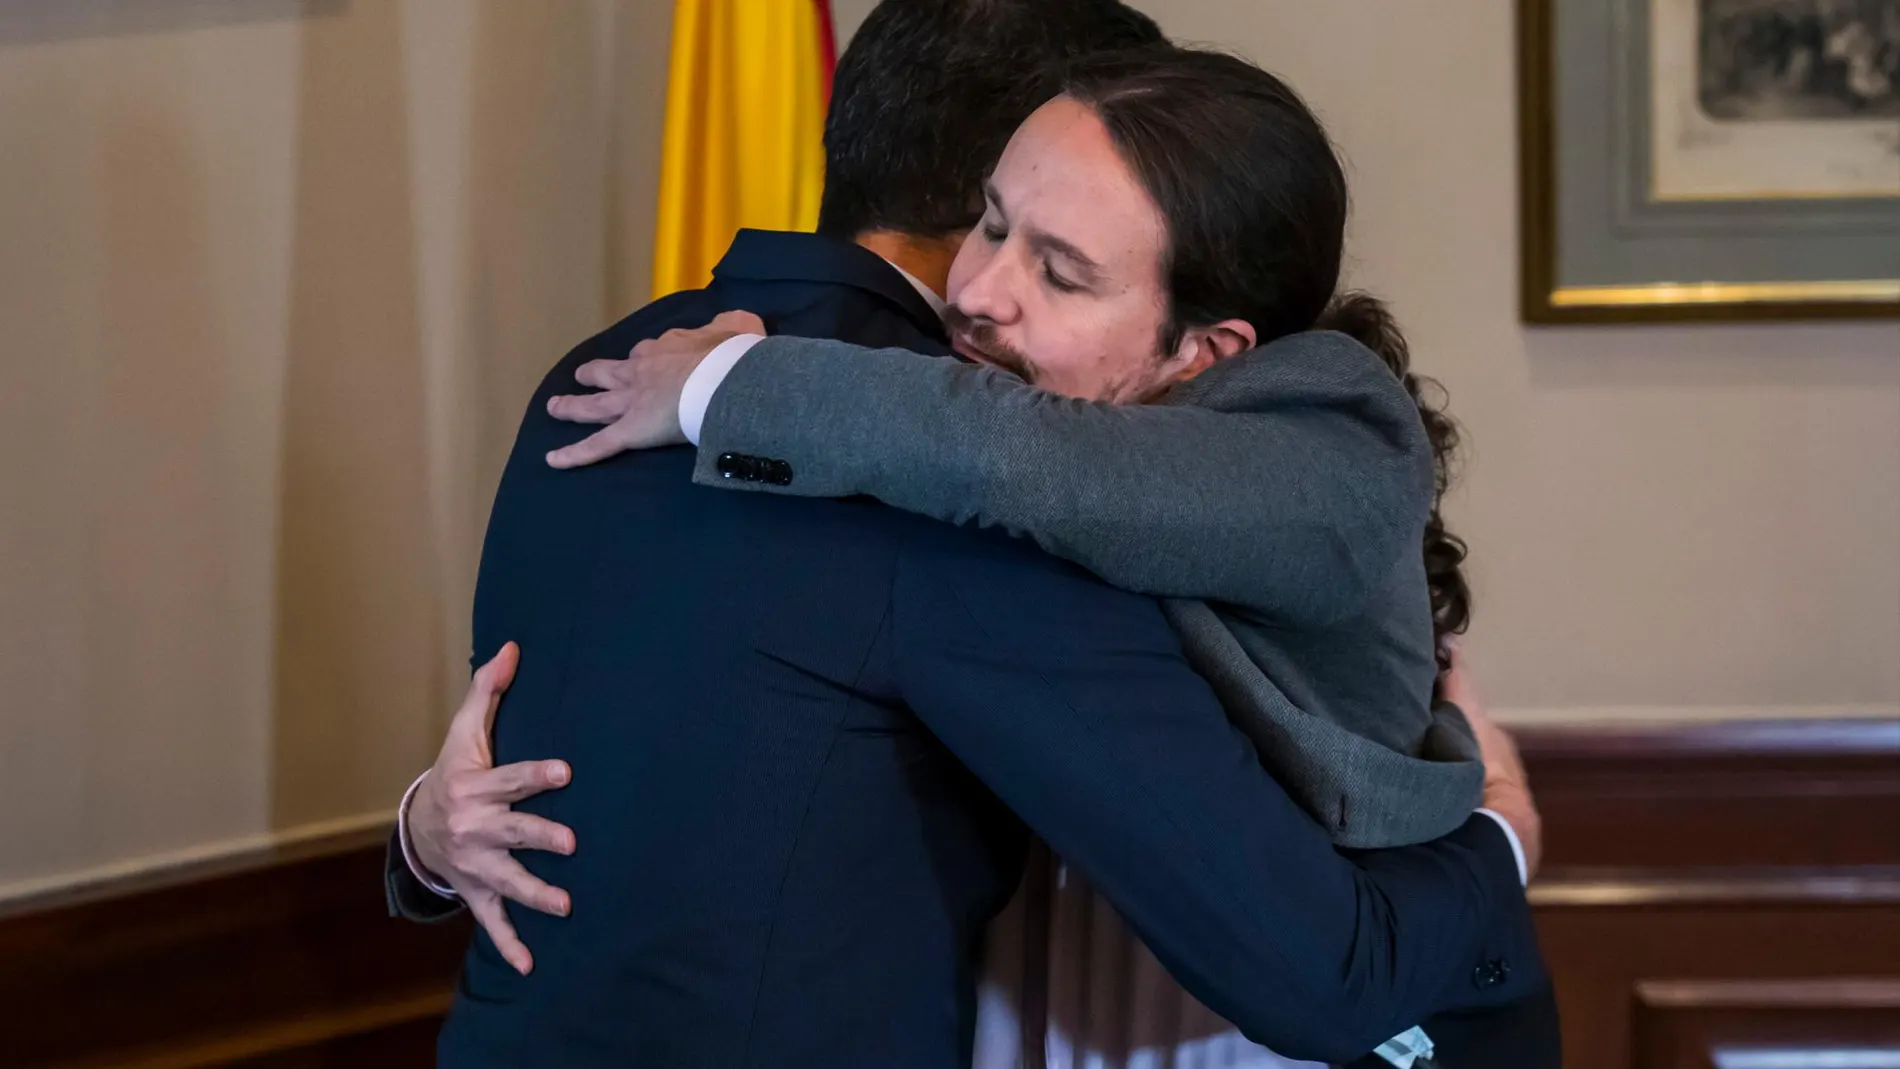 Pedro Sánchez y Pablo Iglesias se abrazan / Foto: Alberto R. Roldán